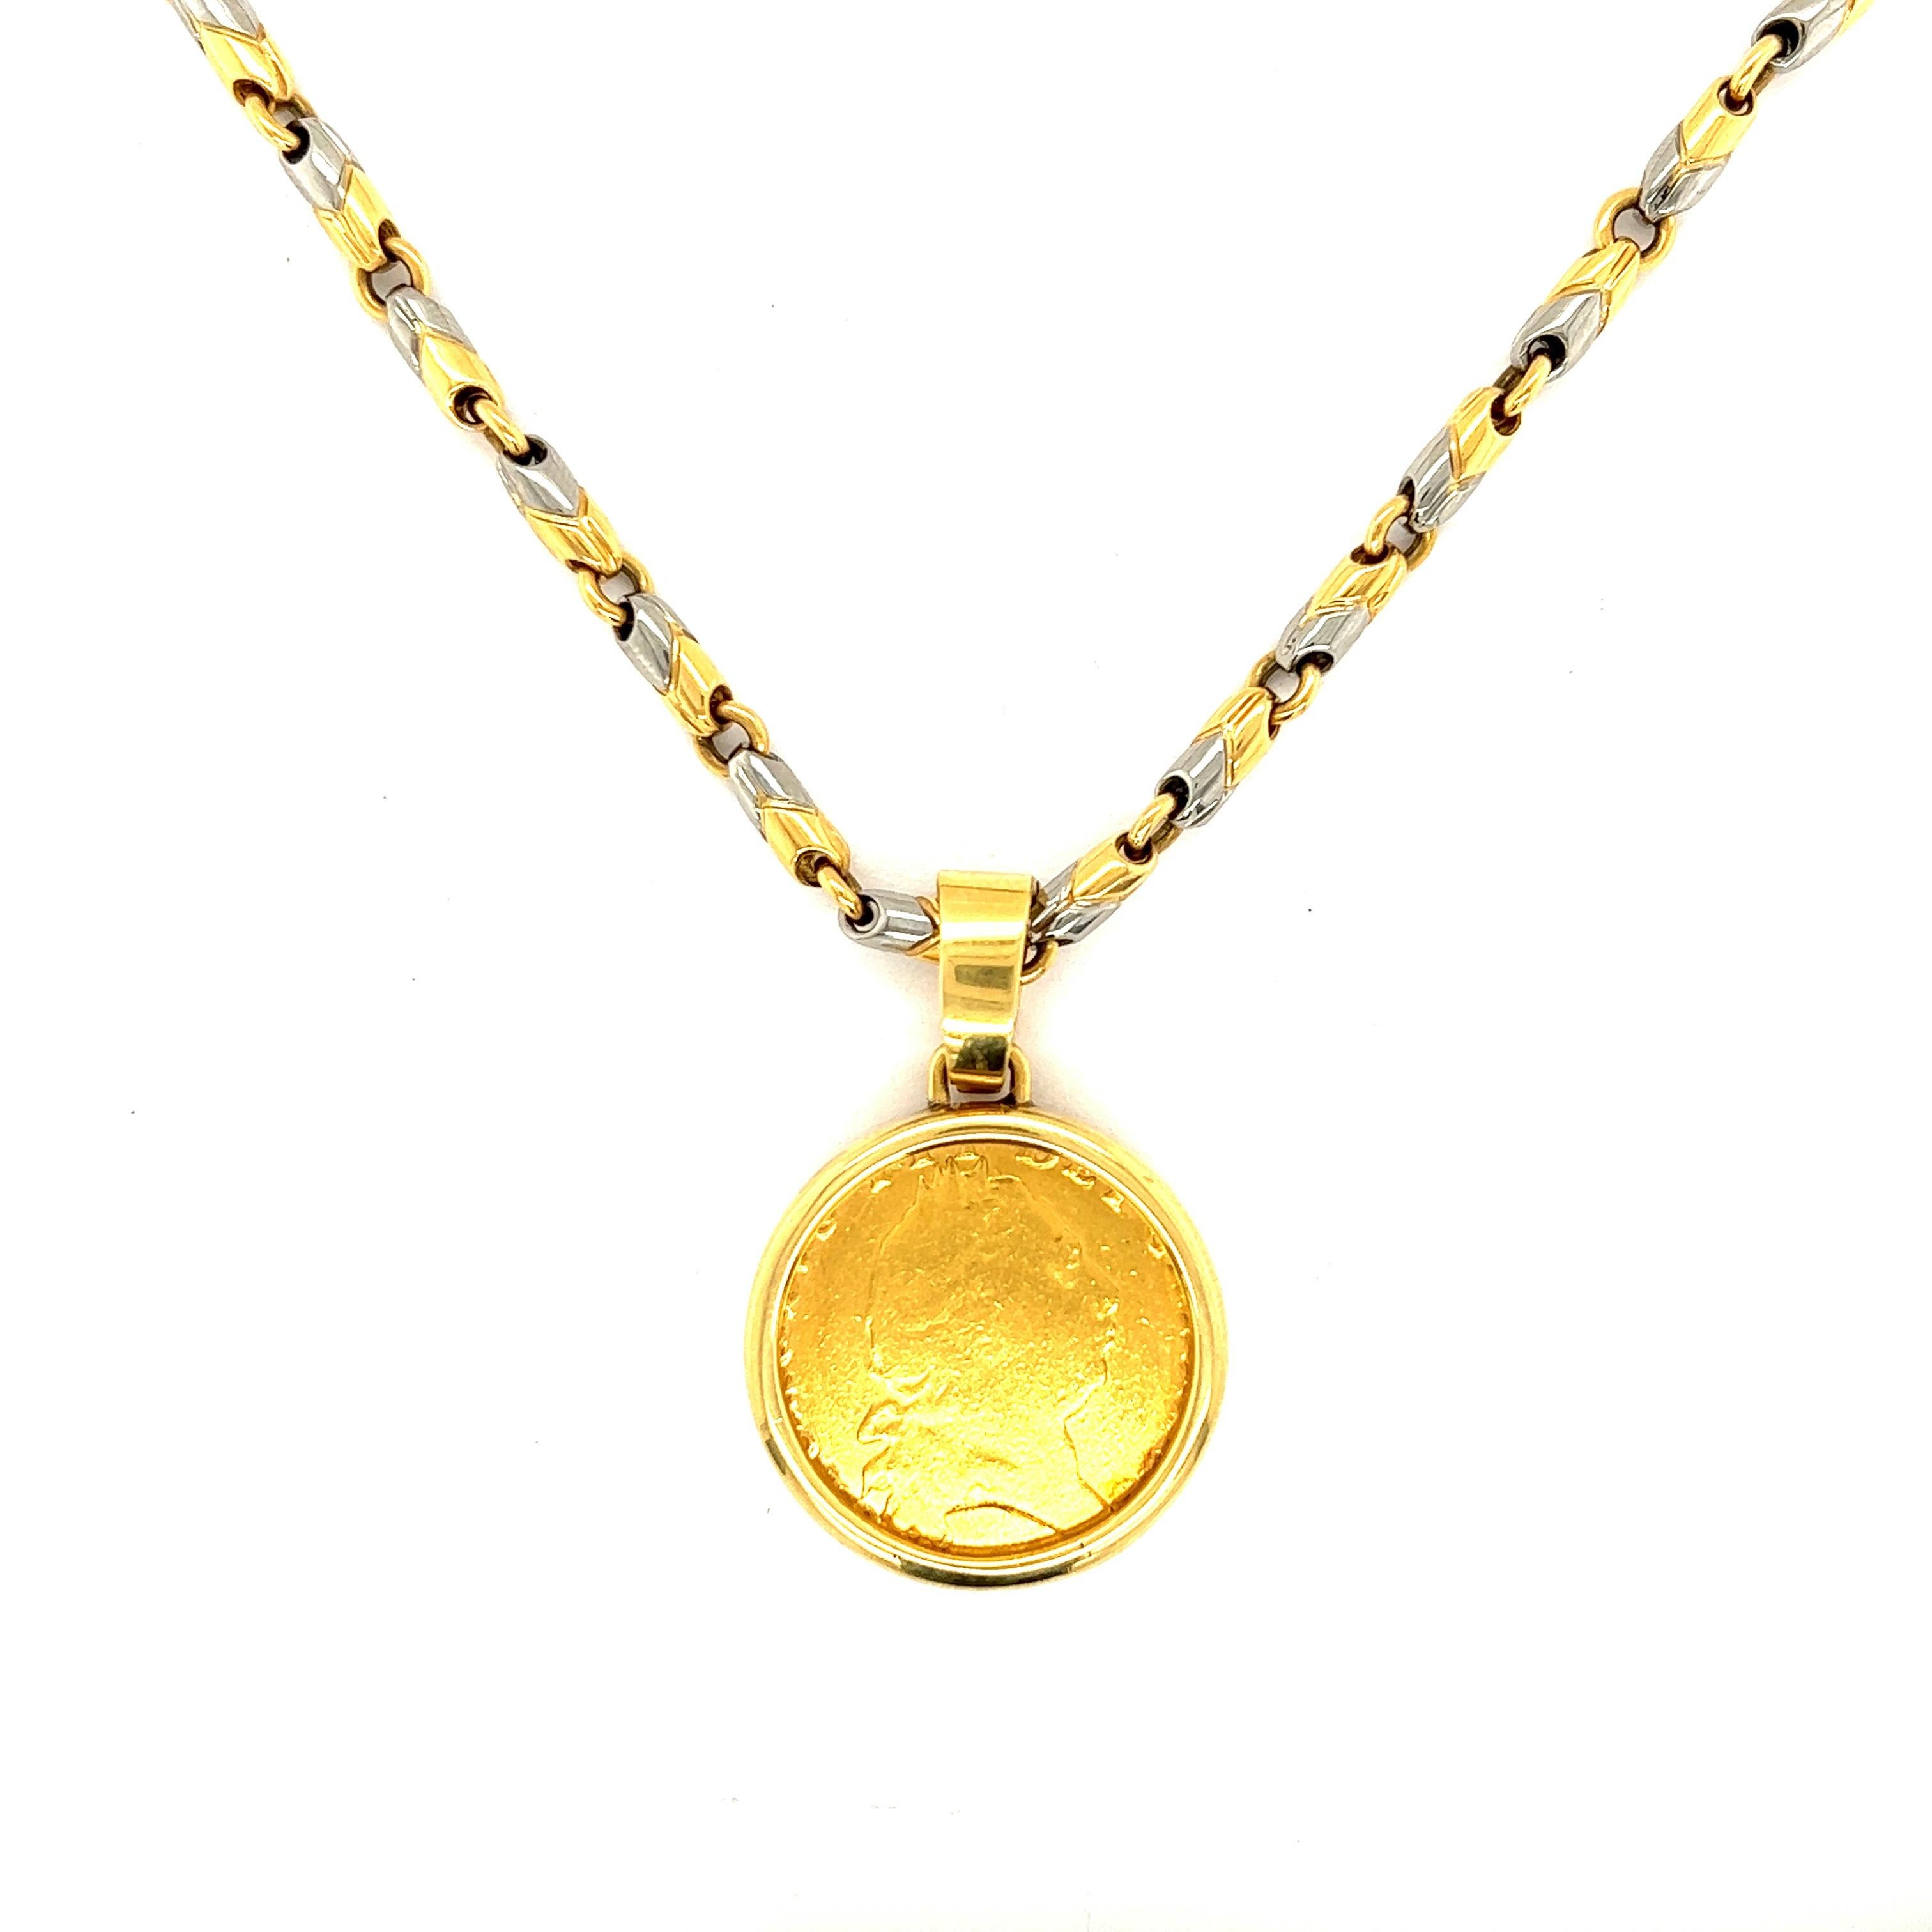 Bvlgari Monete Goldmünze-Anhänger mit Gold- und Stahl-Halskette

Goldmünze in einem Anhänger mit Goldlünette und einer Kette aus Edelstahl und 18-karätigem Gelbgold; markiert Bvlgari N.Y. (Lünette); Bvlgari, Gold and Steel (Kette); 750